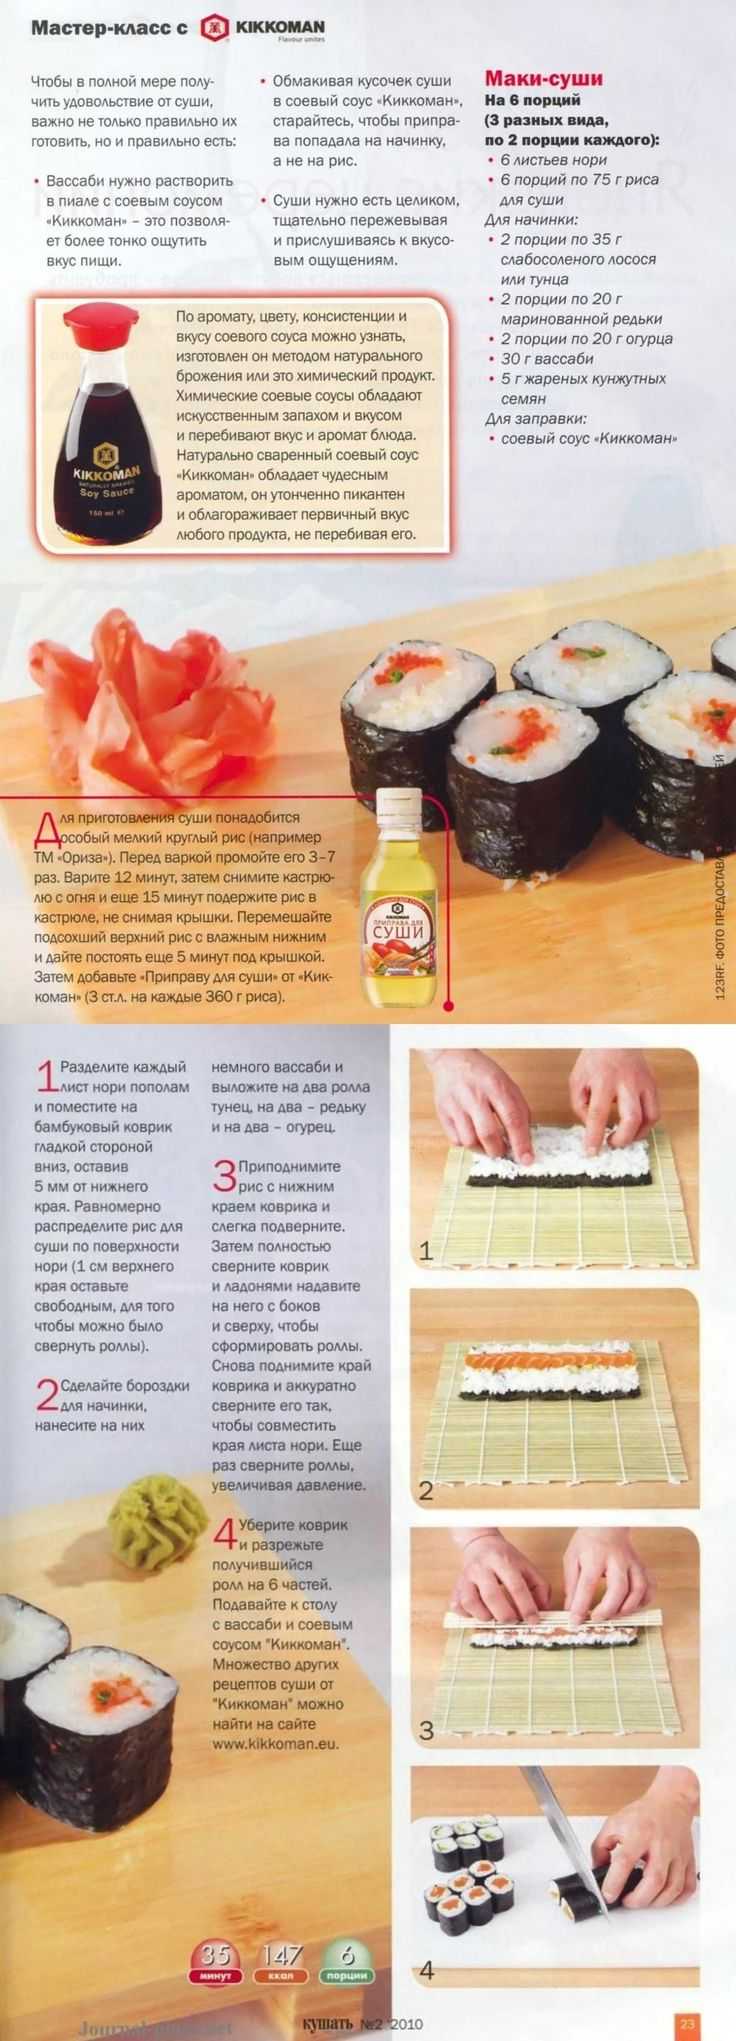 Рецепт запеченных суши в домашних условиях фото 9